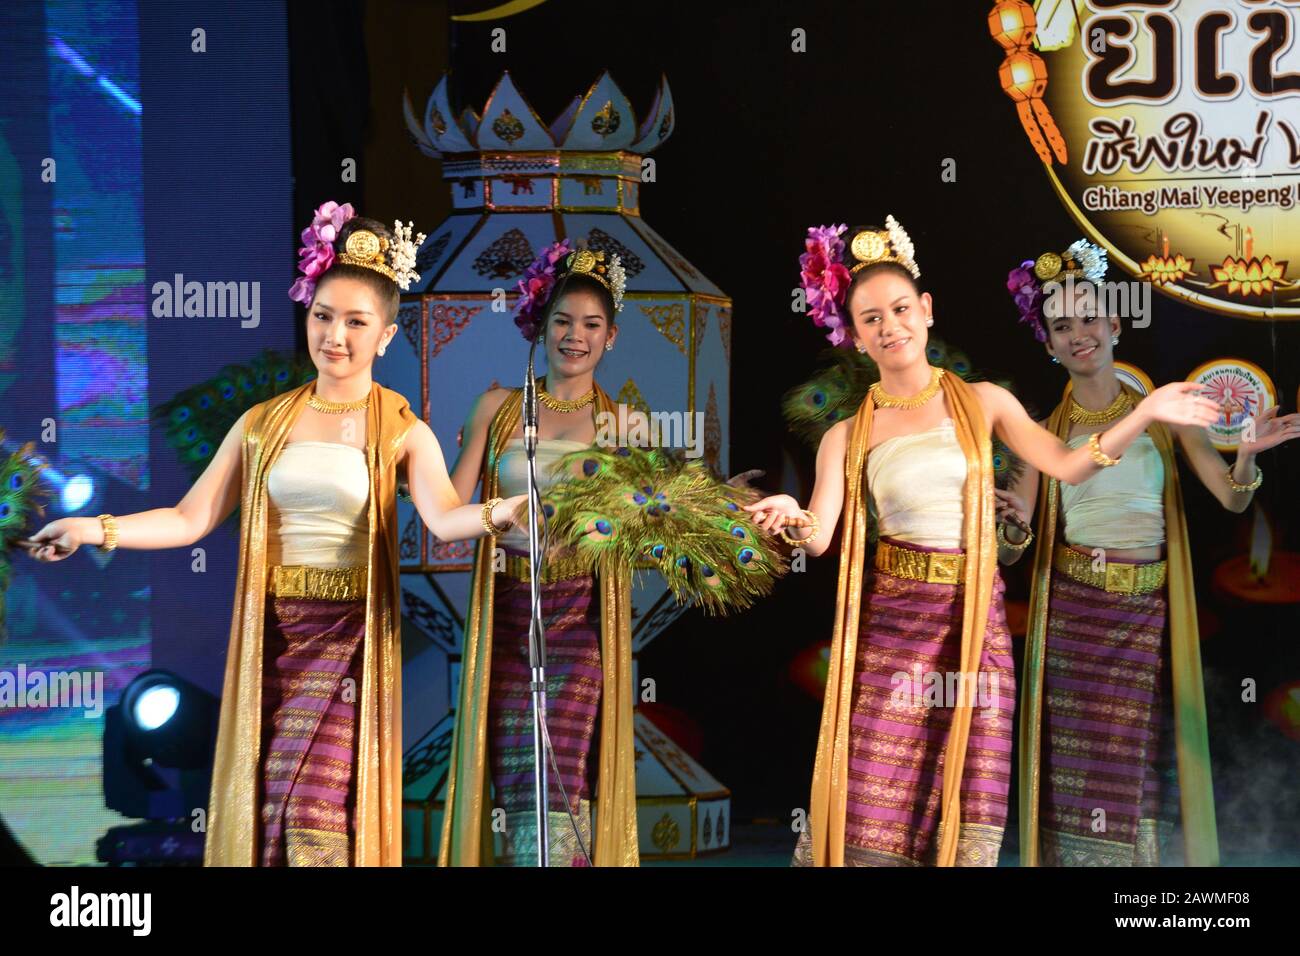 Des danseurs thaïlandais se produisent pendant le festival Yee Peng à Chiang Mai, en Thaïlande Banque D'Images